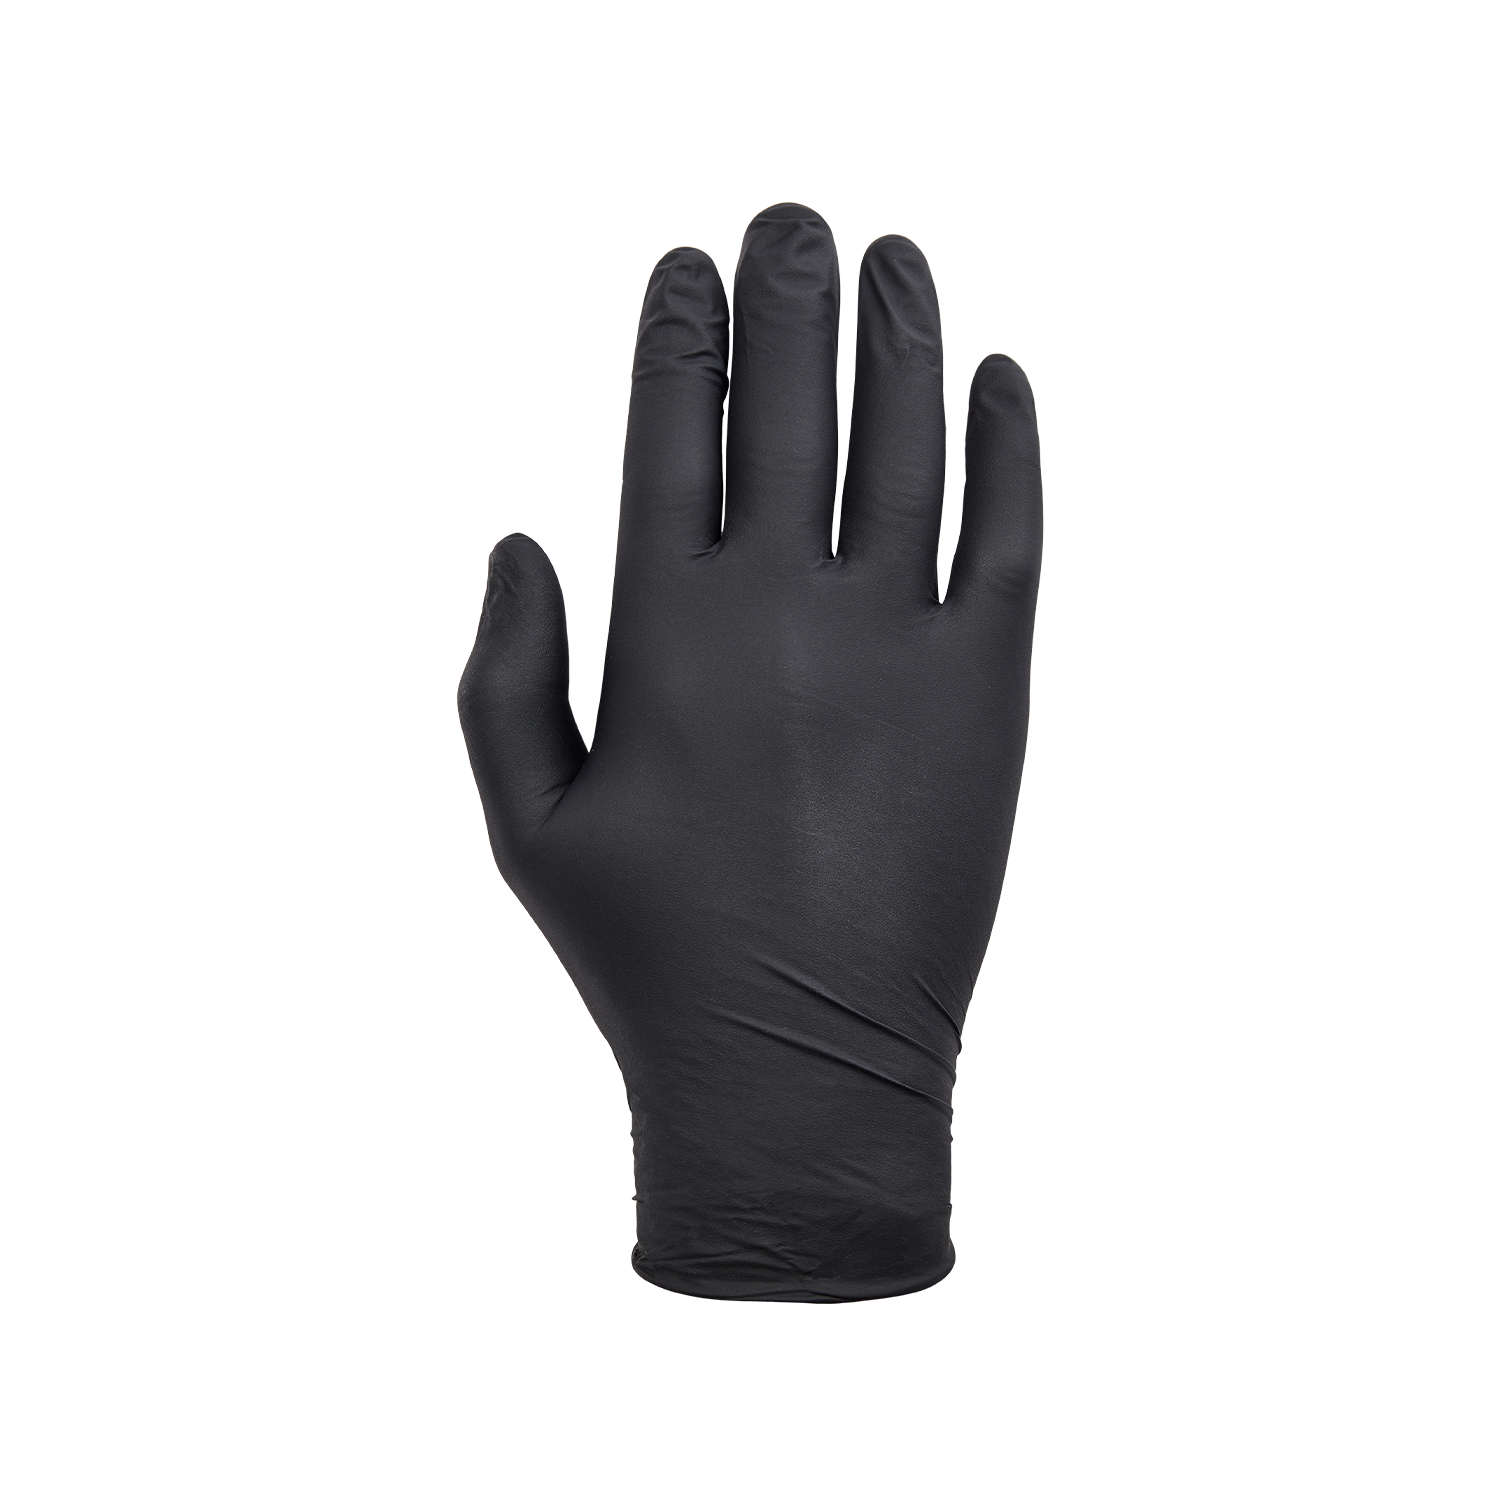 NORSE disposable zwarte nitril handschoenen voor eenmalig gebruik - maat 6/XS